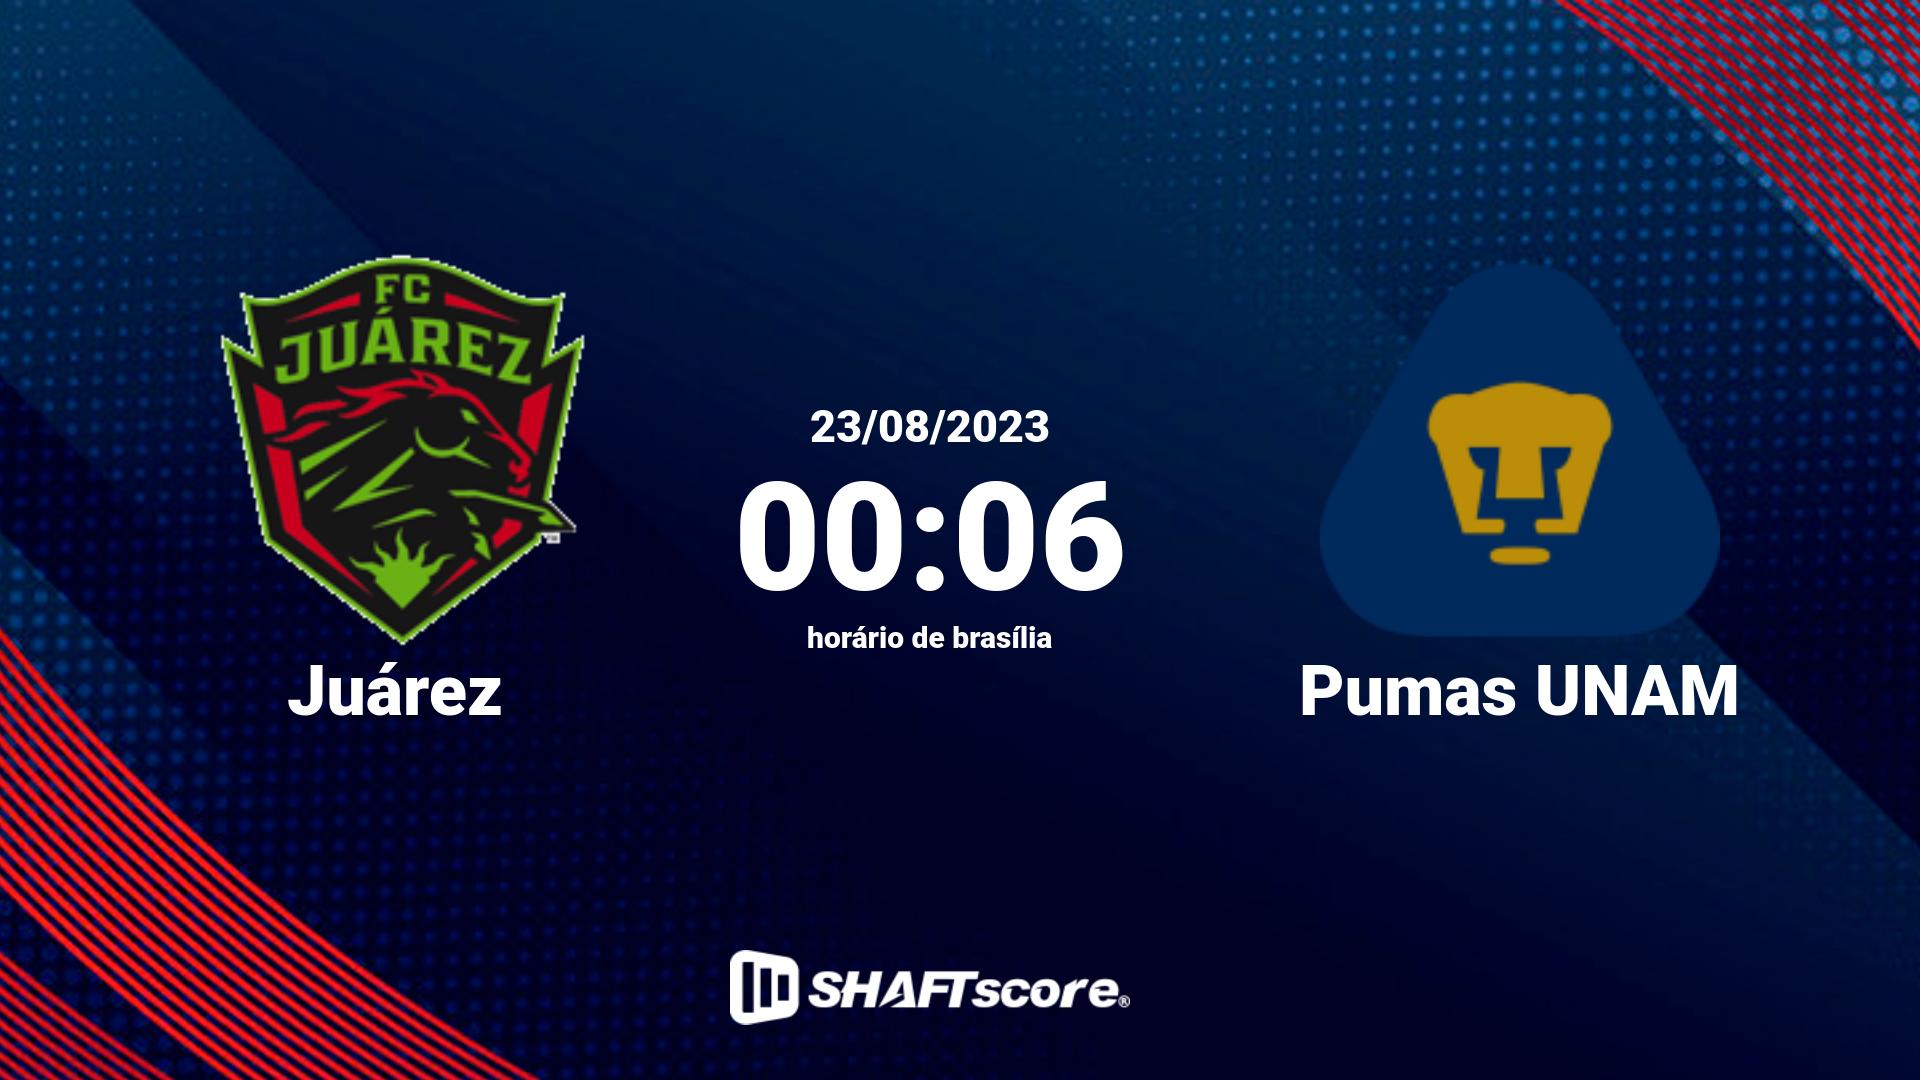 Estatísticas do jogo Juárez vs Pumas UNAM 23.08 00:06